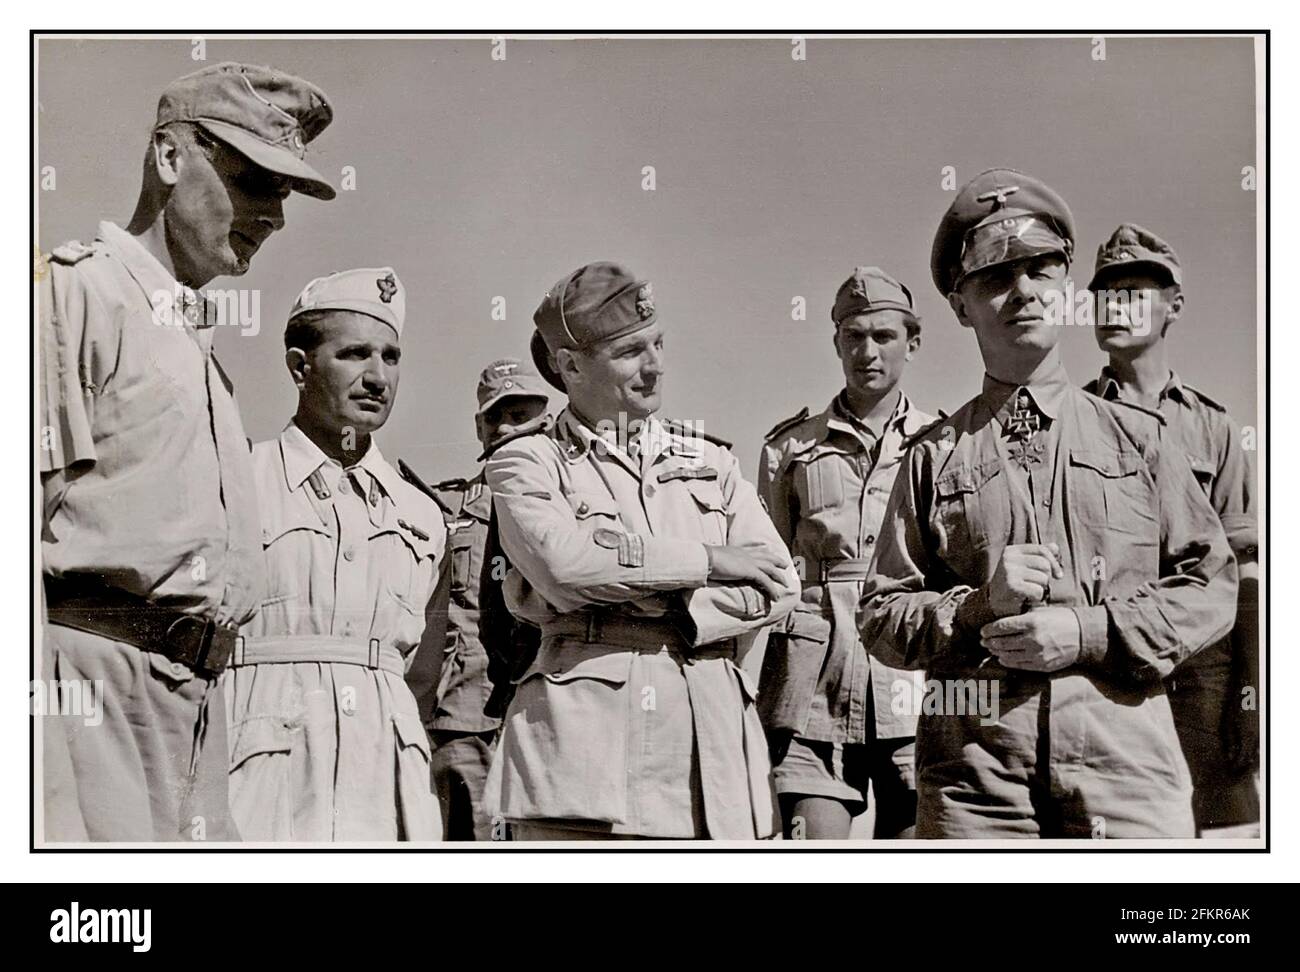 WW2 ROMMEL AFRIKACORPS LE GÉNÉRAL Johannes Erwin Eugen Rommel (15 novembre 1891 – 14 octobre 1944) était un théoricien général et militaire allemand nazi. Populairement connu sous le nom de Desert Fox, le général Rommel était un commandant respecté de l'Afrikakorps-1941 - Generalleutnant Erwin Rommel (Kommandierender General Deutsche Afrikakorps) à Tripoli (Libye) quand il est venu en Afrique du Nord 1941. Deuxième Guerre mondiale Banque D'Images